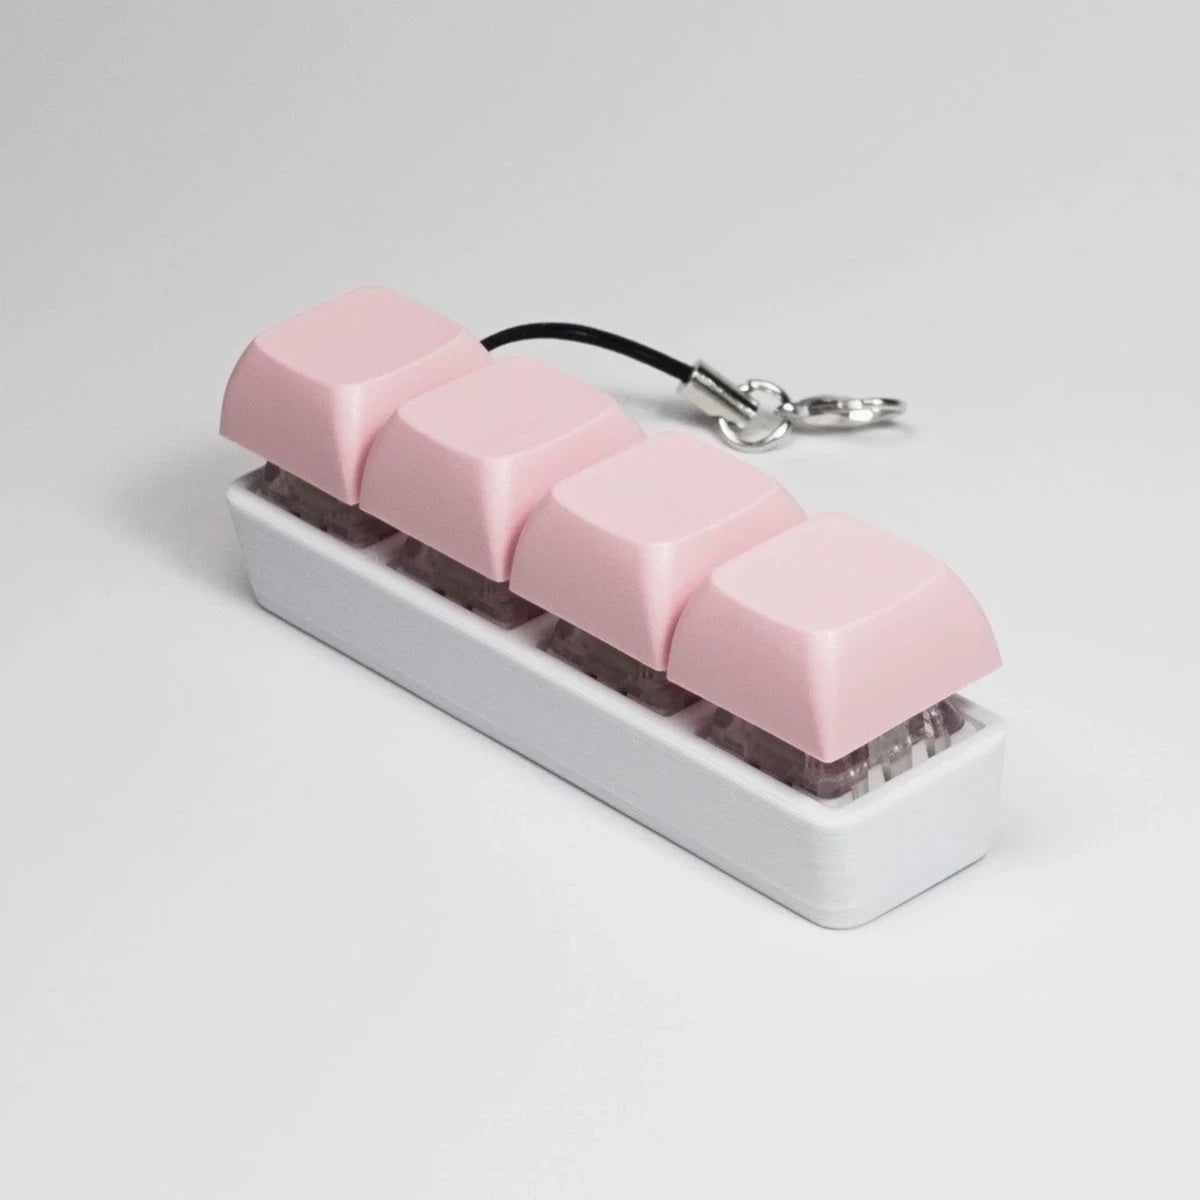 Strudel 3D 4 Key Fidget Stick - Pink